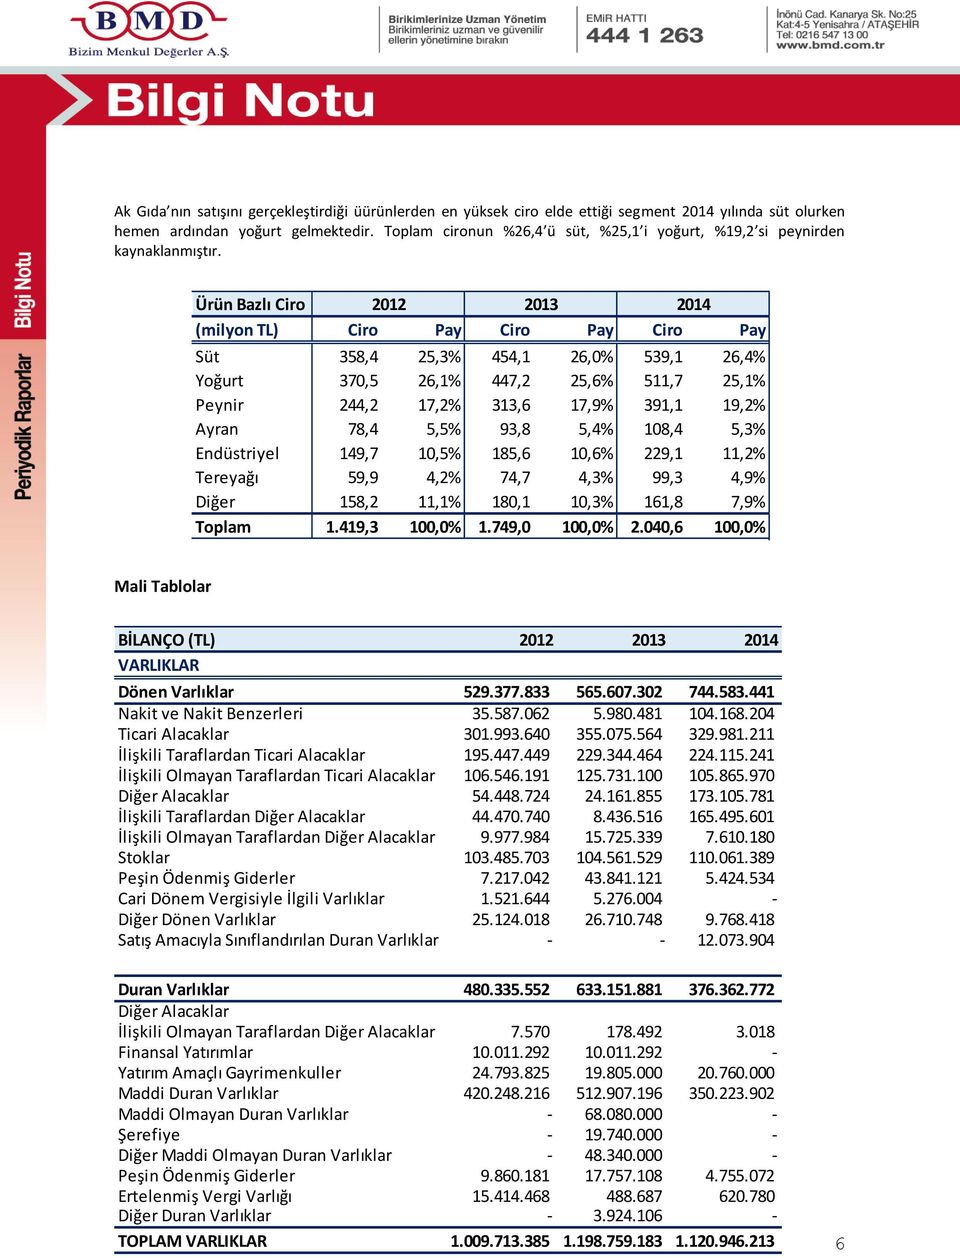 Ürün Bazlı Ciro 2012 2013 2014 (milyon TL) Ciro Pay Ciro Pay Ciro Pay Süt 358,4 25,3% 454,1 26,0% 539,1 26,4% Yoğurt 370,5 26,1% 447,2 25,6% 511,7 25,1% Peynir 244,2 17,2% 313,6 17,9% 391,1 19,2%